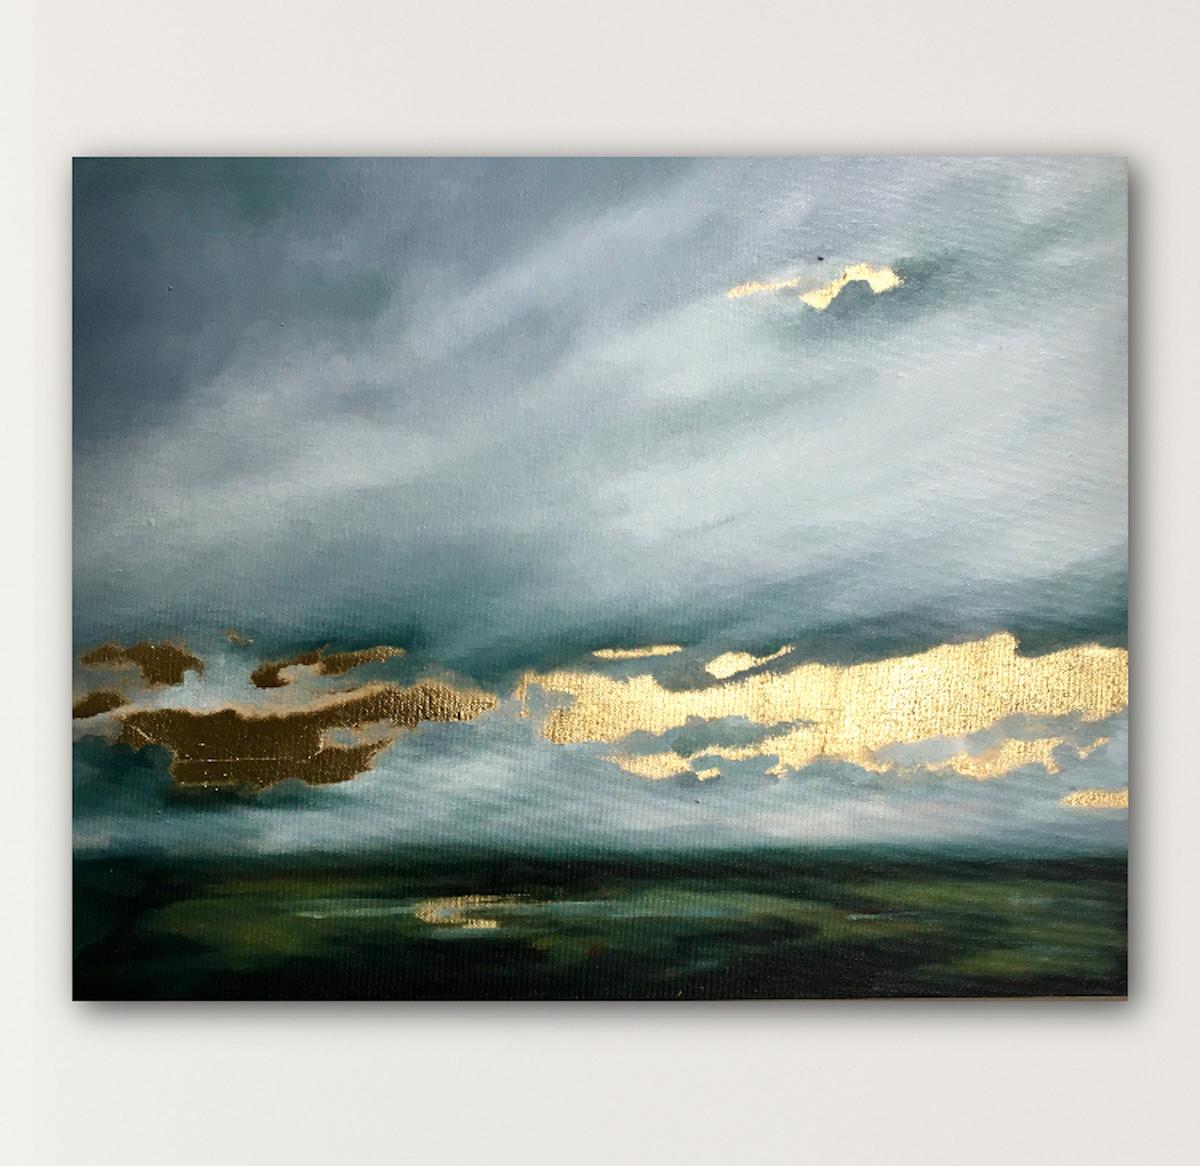 Eine Blattgold-Landschaftsmalerei von Sophie Berger. Dieses Original-Ölgemälde auf Leinwand hat die Tiefe und die Stimmung eines Dartmoor-Himmels sowie den lebhaften Sonnenschein, der sich hinter den Wolken versteckt. Dies wird durch die schillernde